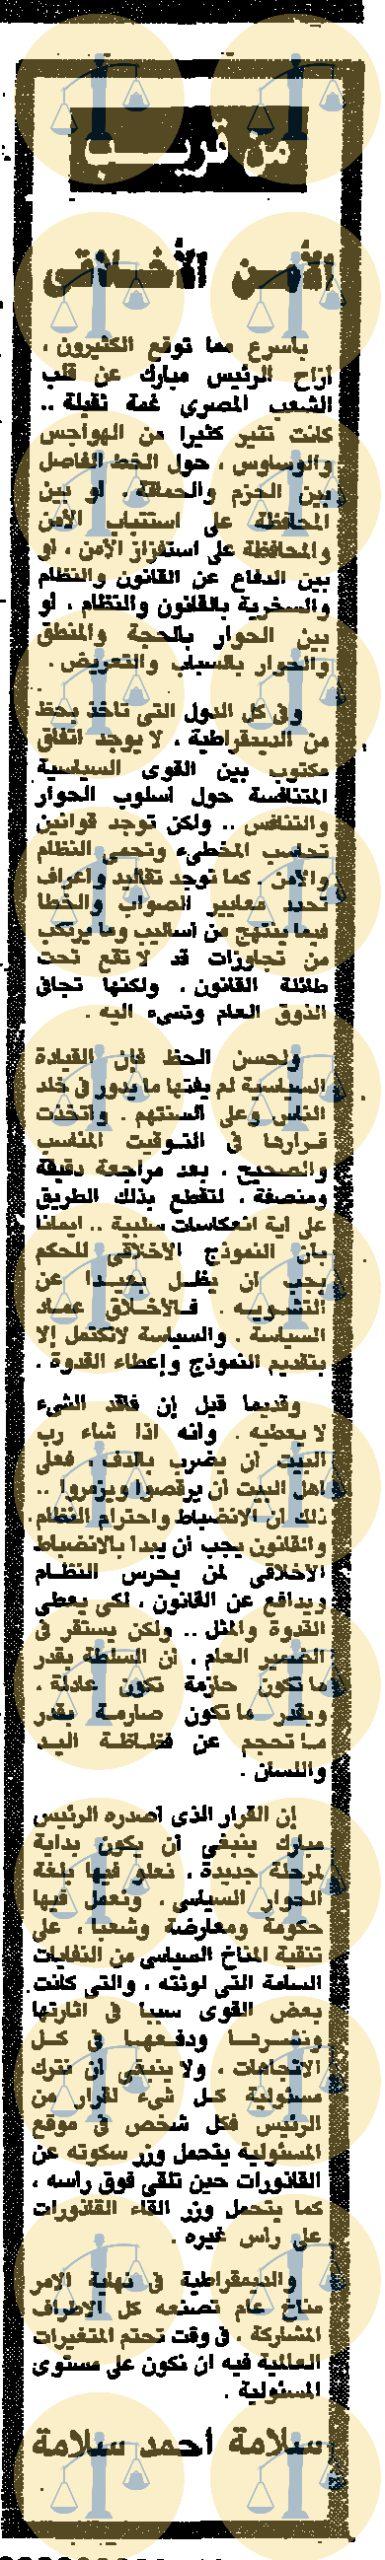 مقال سلامة أحمد سلامة، جريدة الأهرام، عدد 14 يناير 1990م، ص6